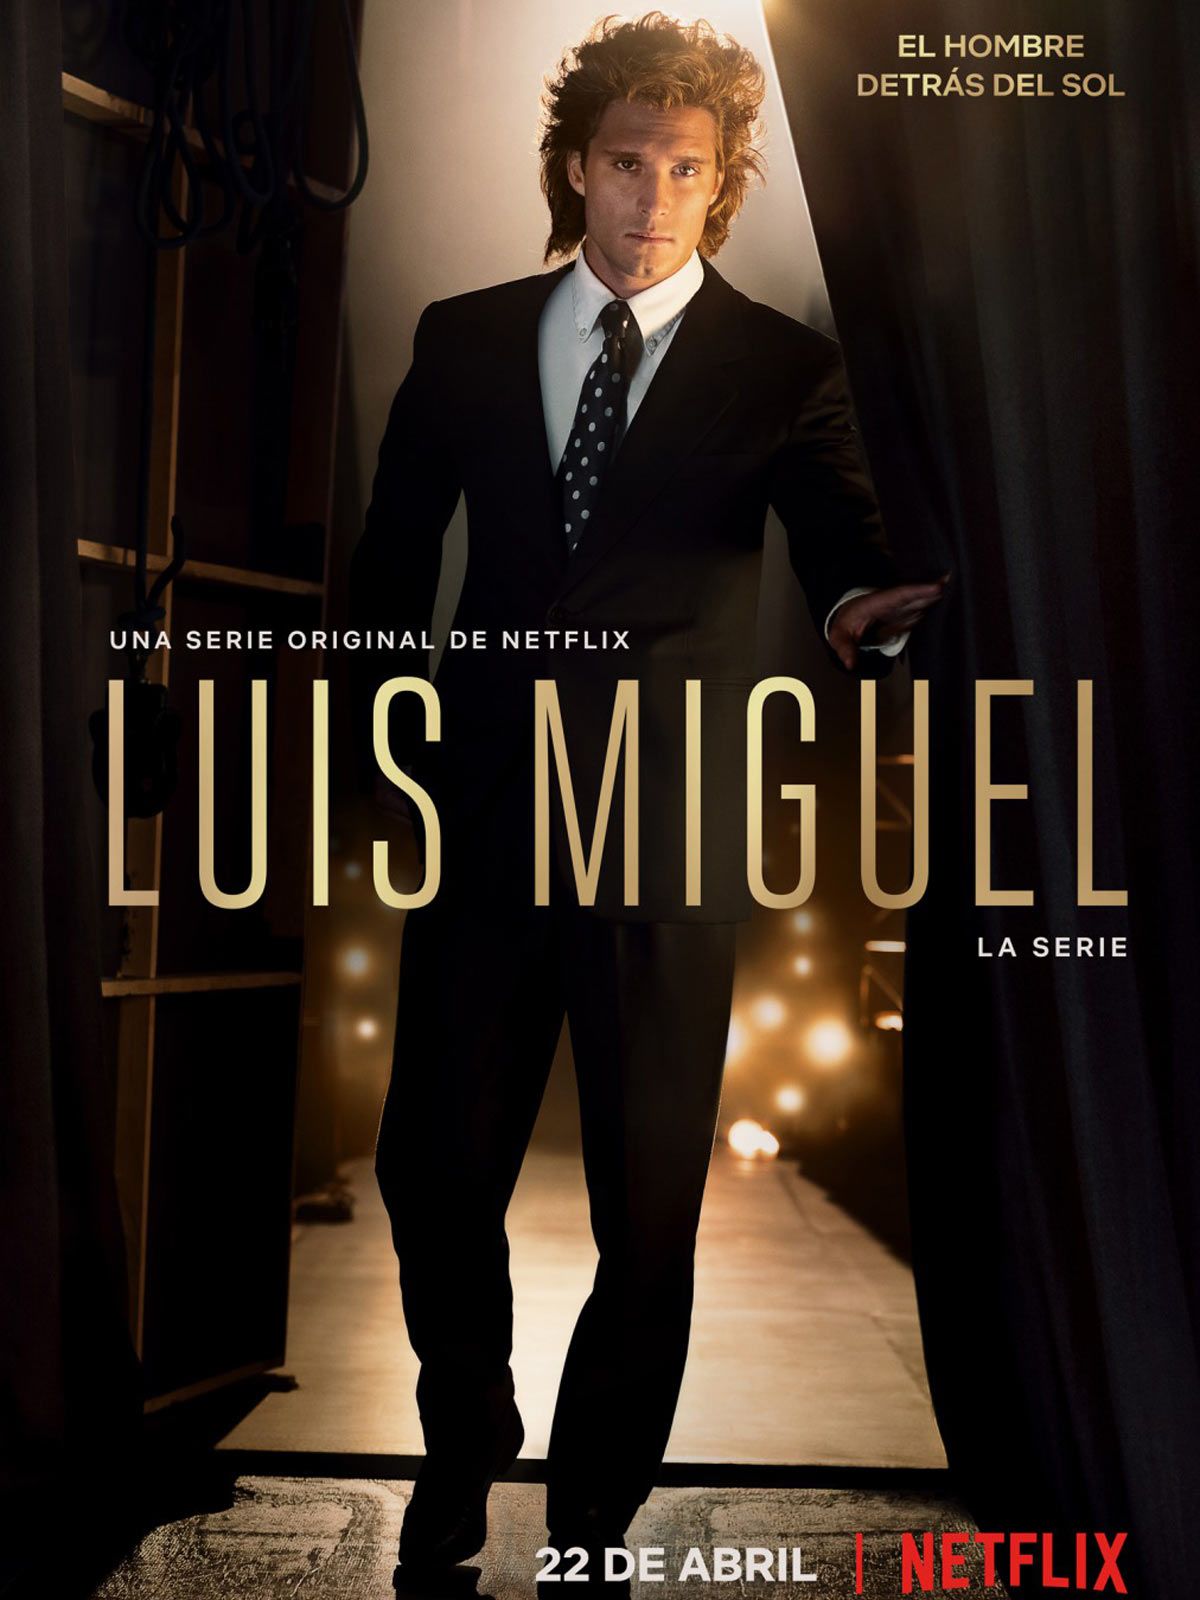 Luis Miguel: La serie. Sinopsis: Luis Miguel, la serie es una